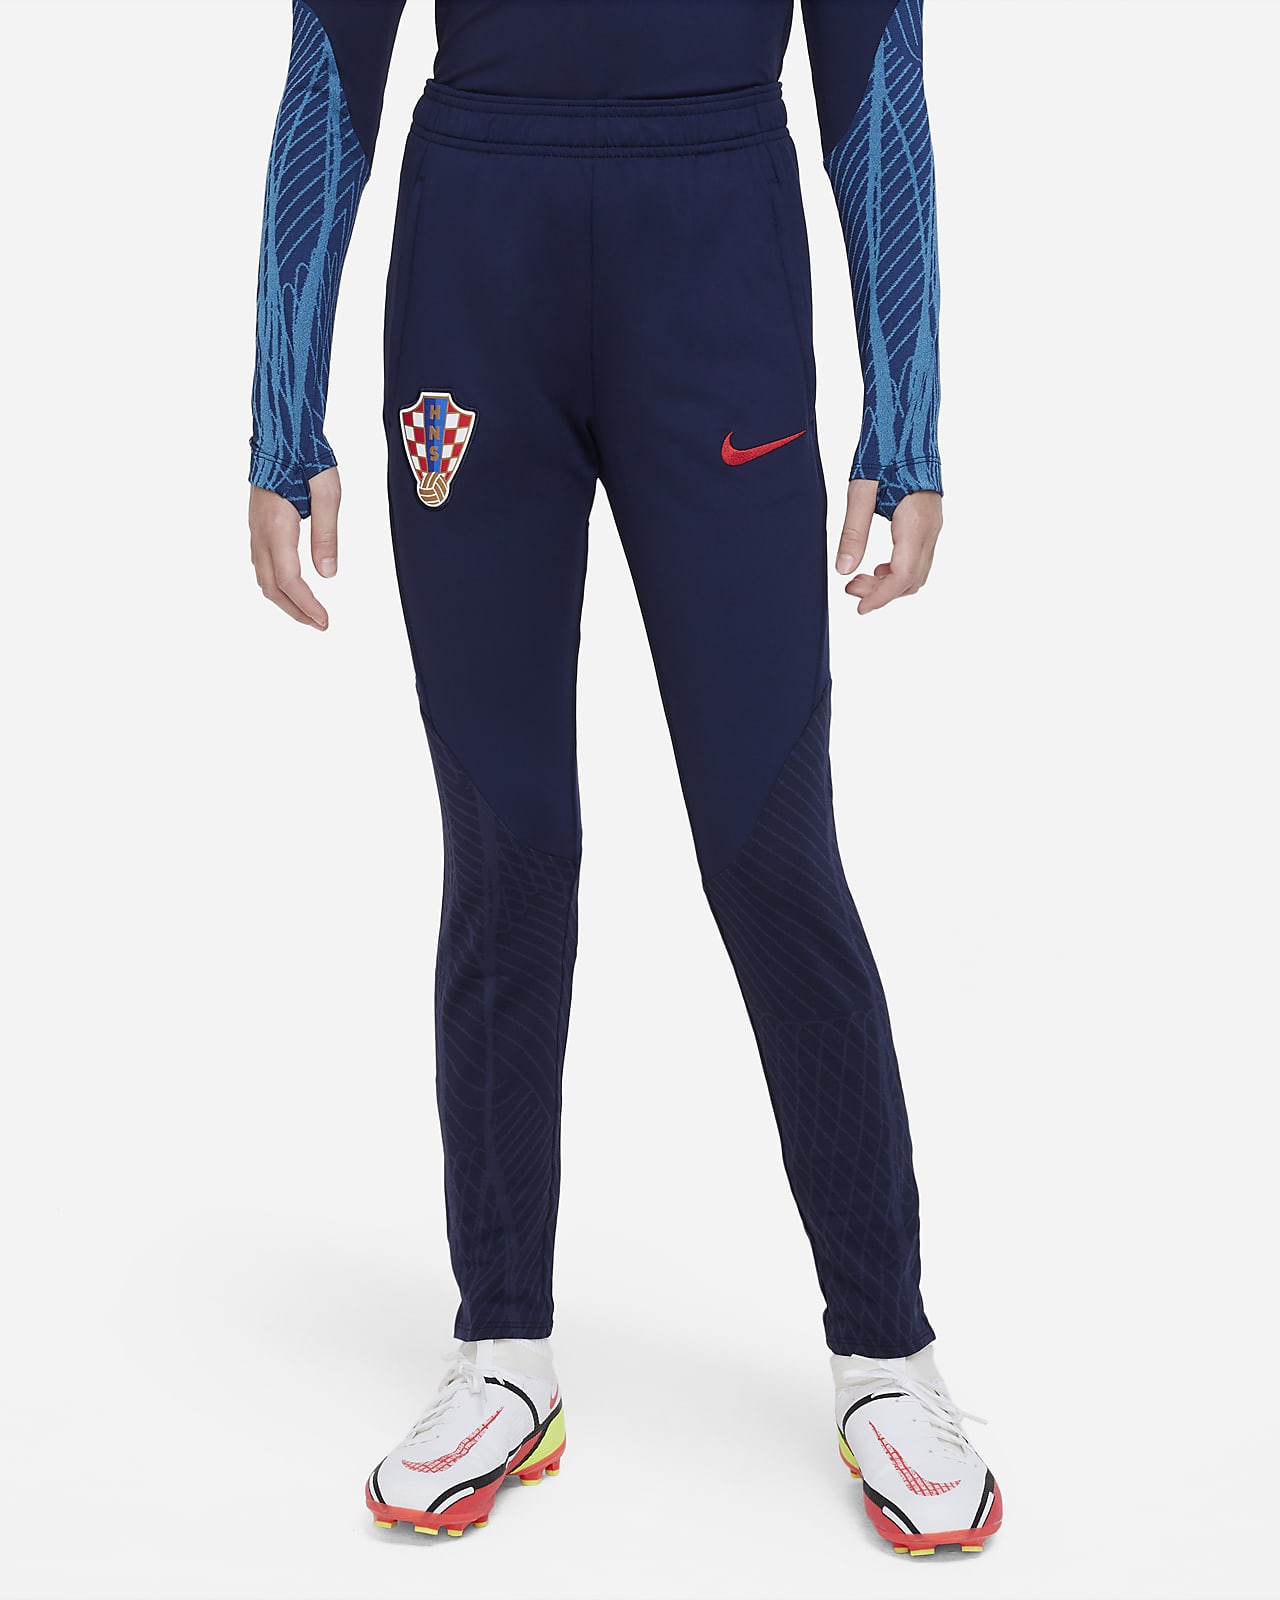 Croatia Strike Older Kids' Nike Dri-FIT Knit Football Pants